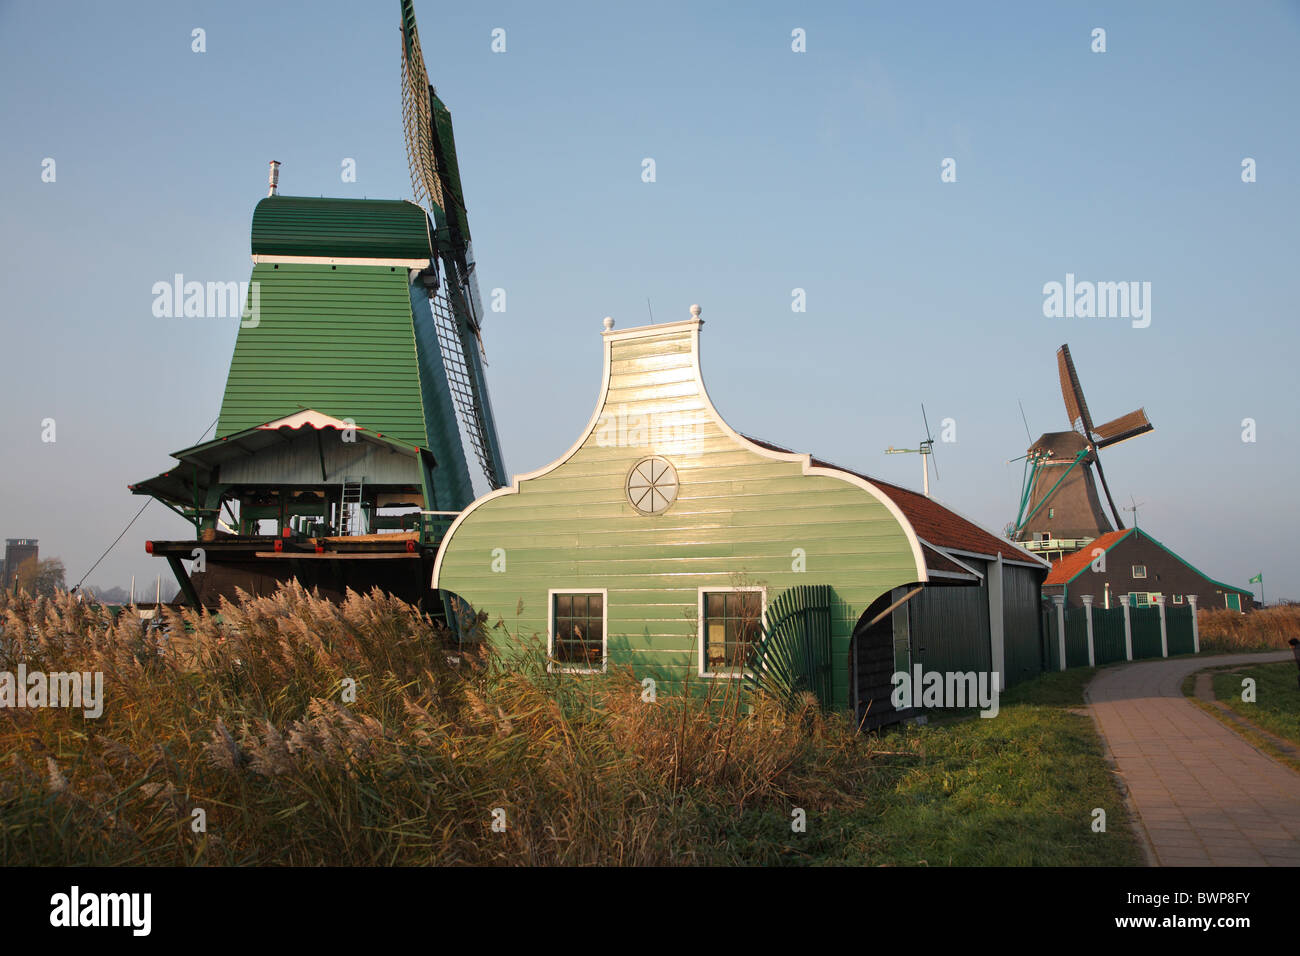 Museum village historique d'Zaance Schans, Pays-Bas, Holland Banque D'Images